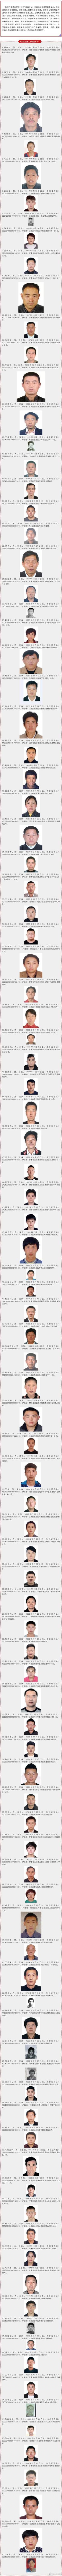 甘肃省公安厅公开通缉郭晓冬等100名涉嫌犯罪在逃人员